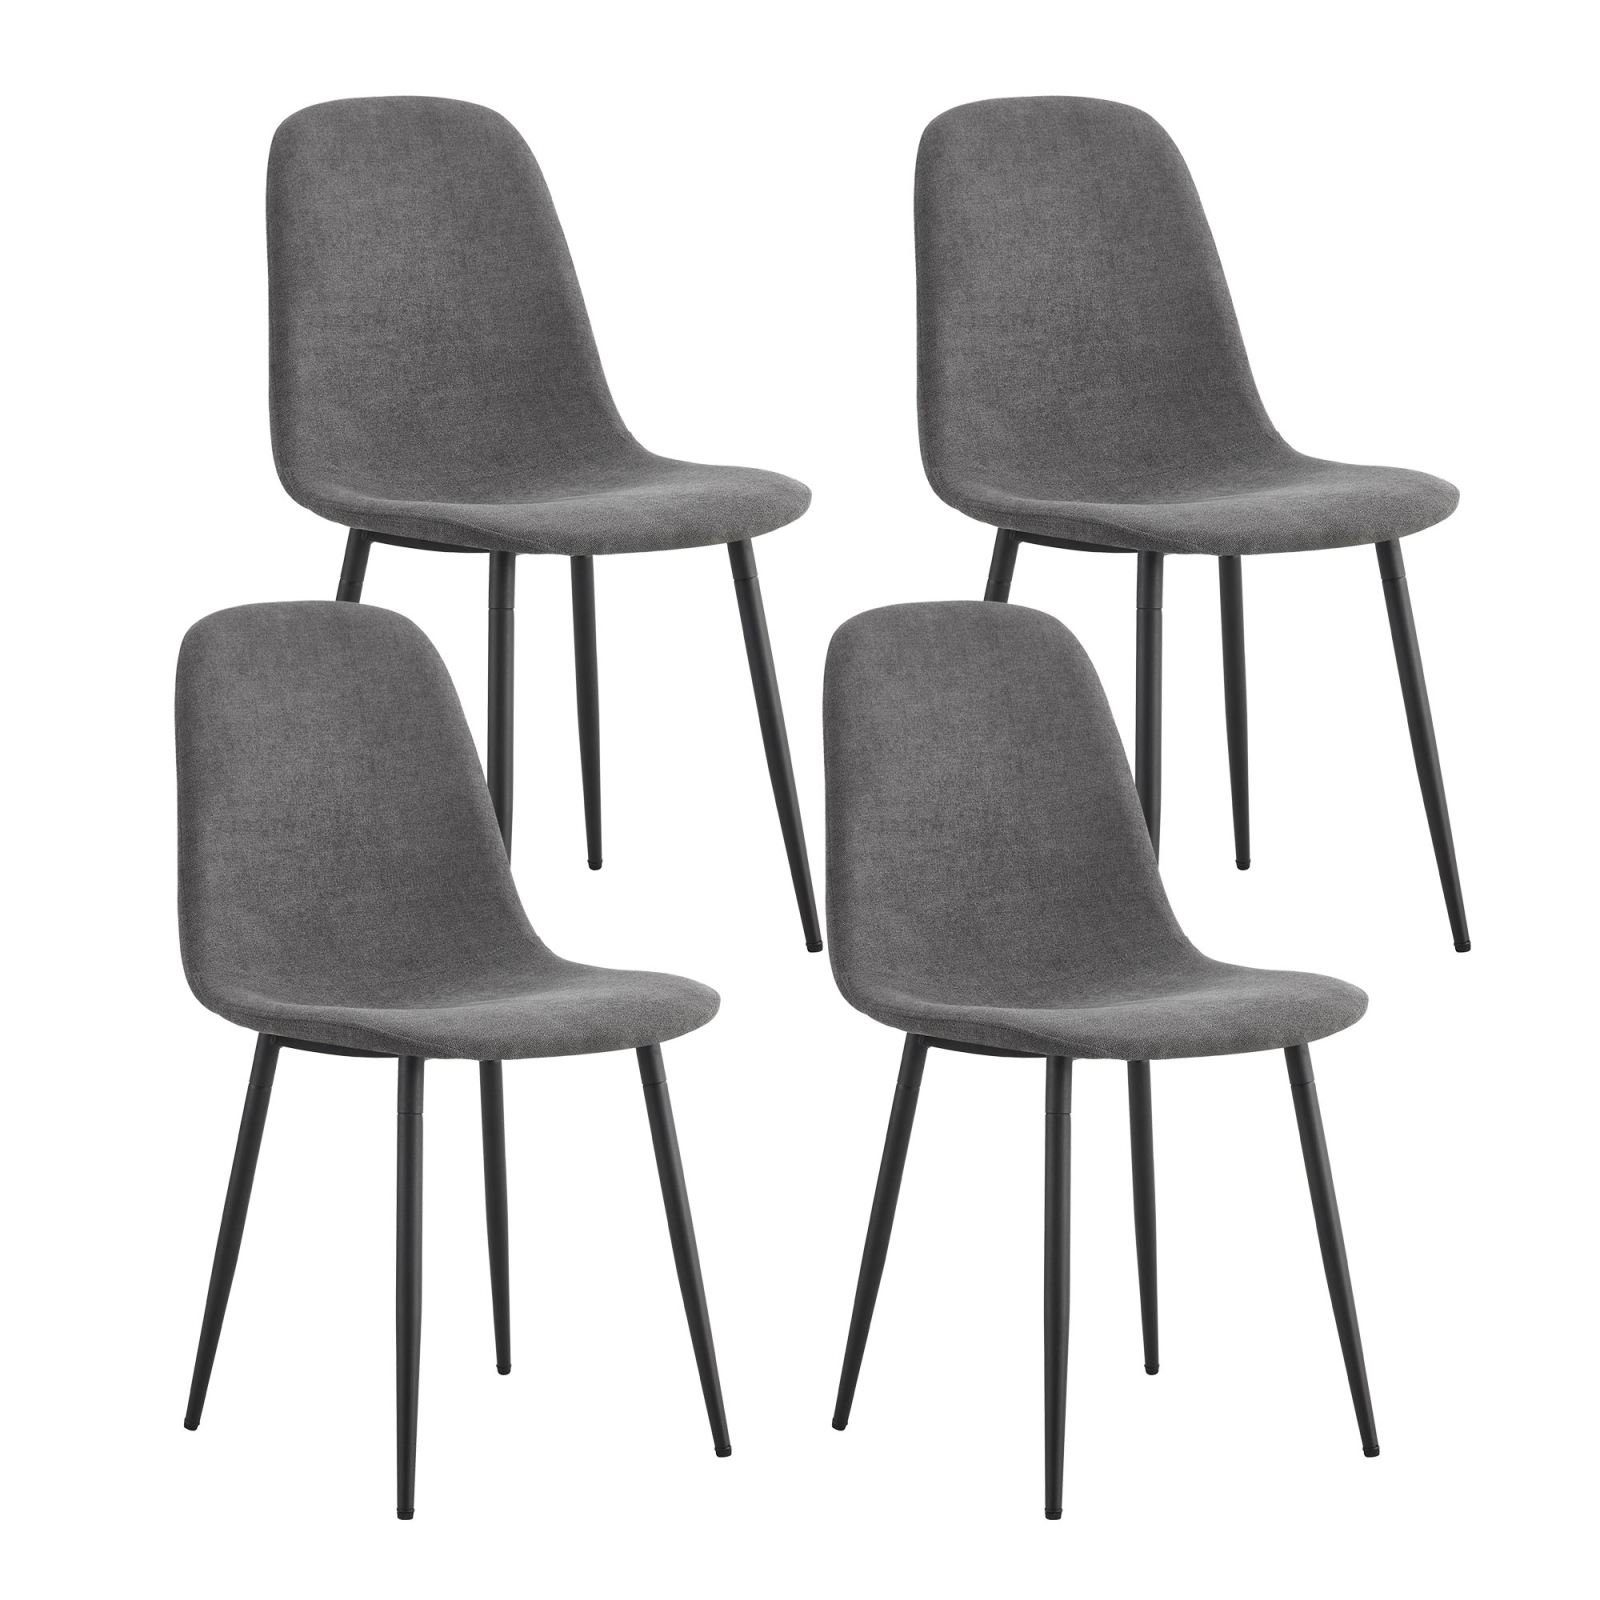 SEEZSSA Esszimmerstuhl 4er Set Esszimmerstühle Polsterstuhl mit Stahlbeinen in Schwarz, 43 cm x 40 cm x 87.5 cm Grau